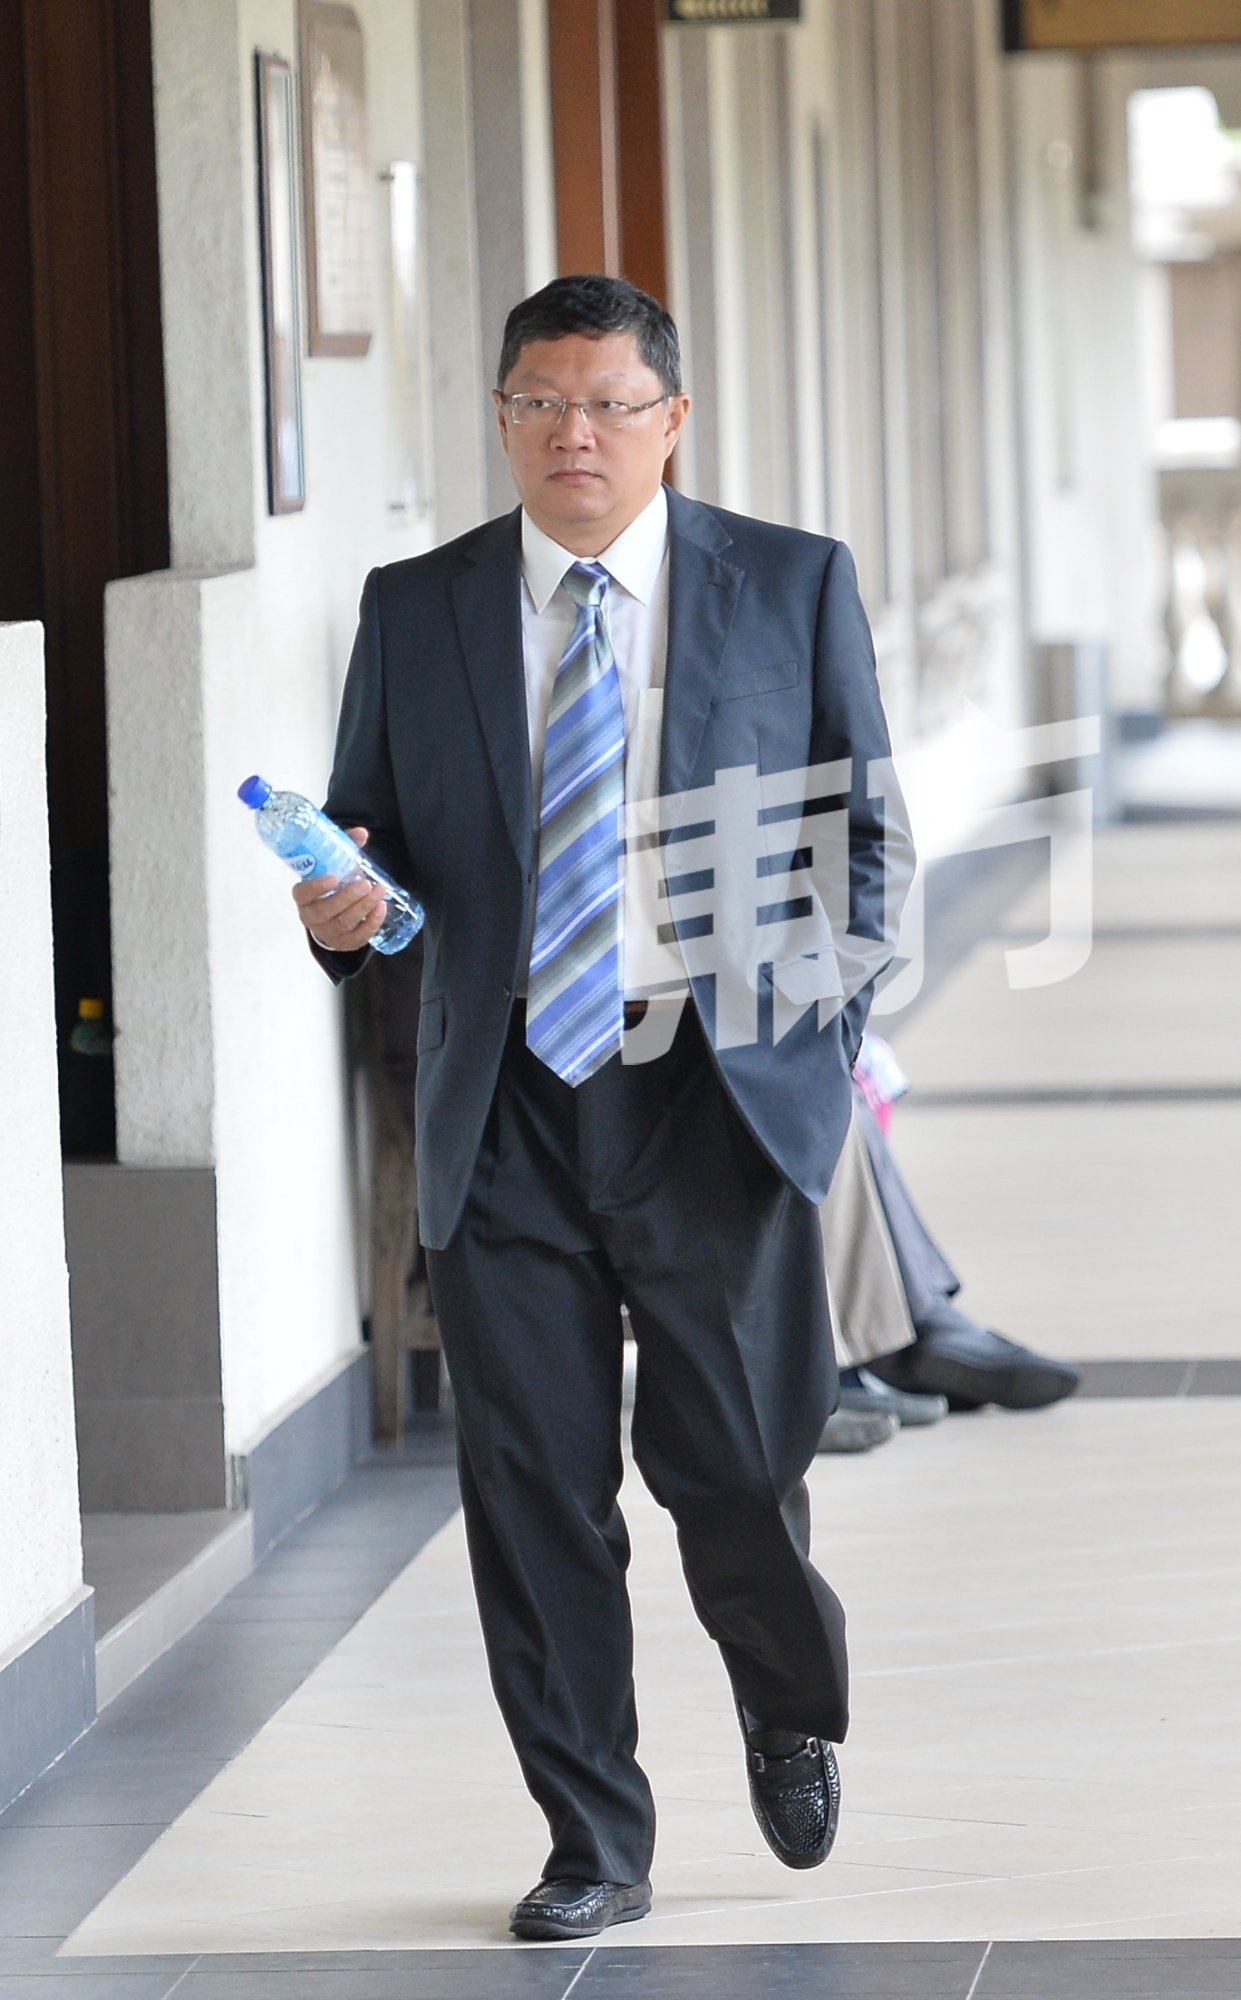 大马国家跳水队前总教练杨祝梁以辩方证人的身份出庭供证。